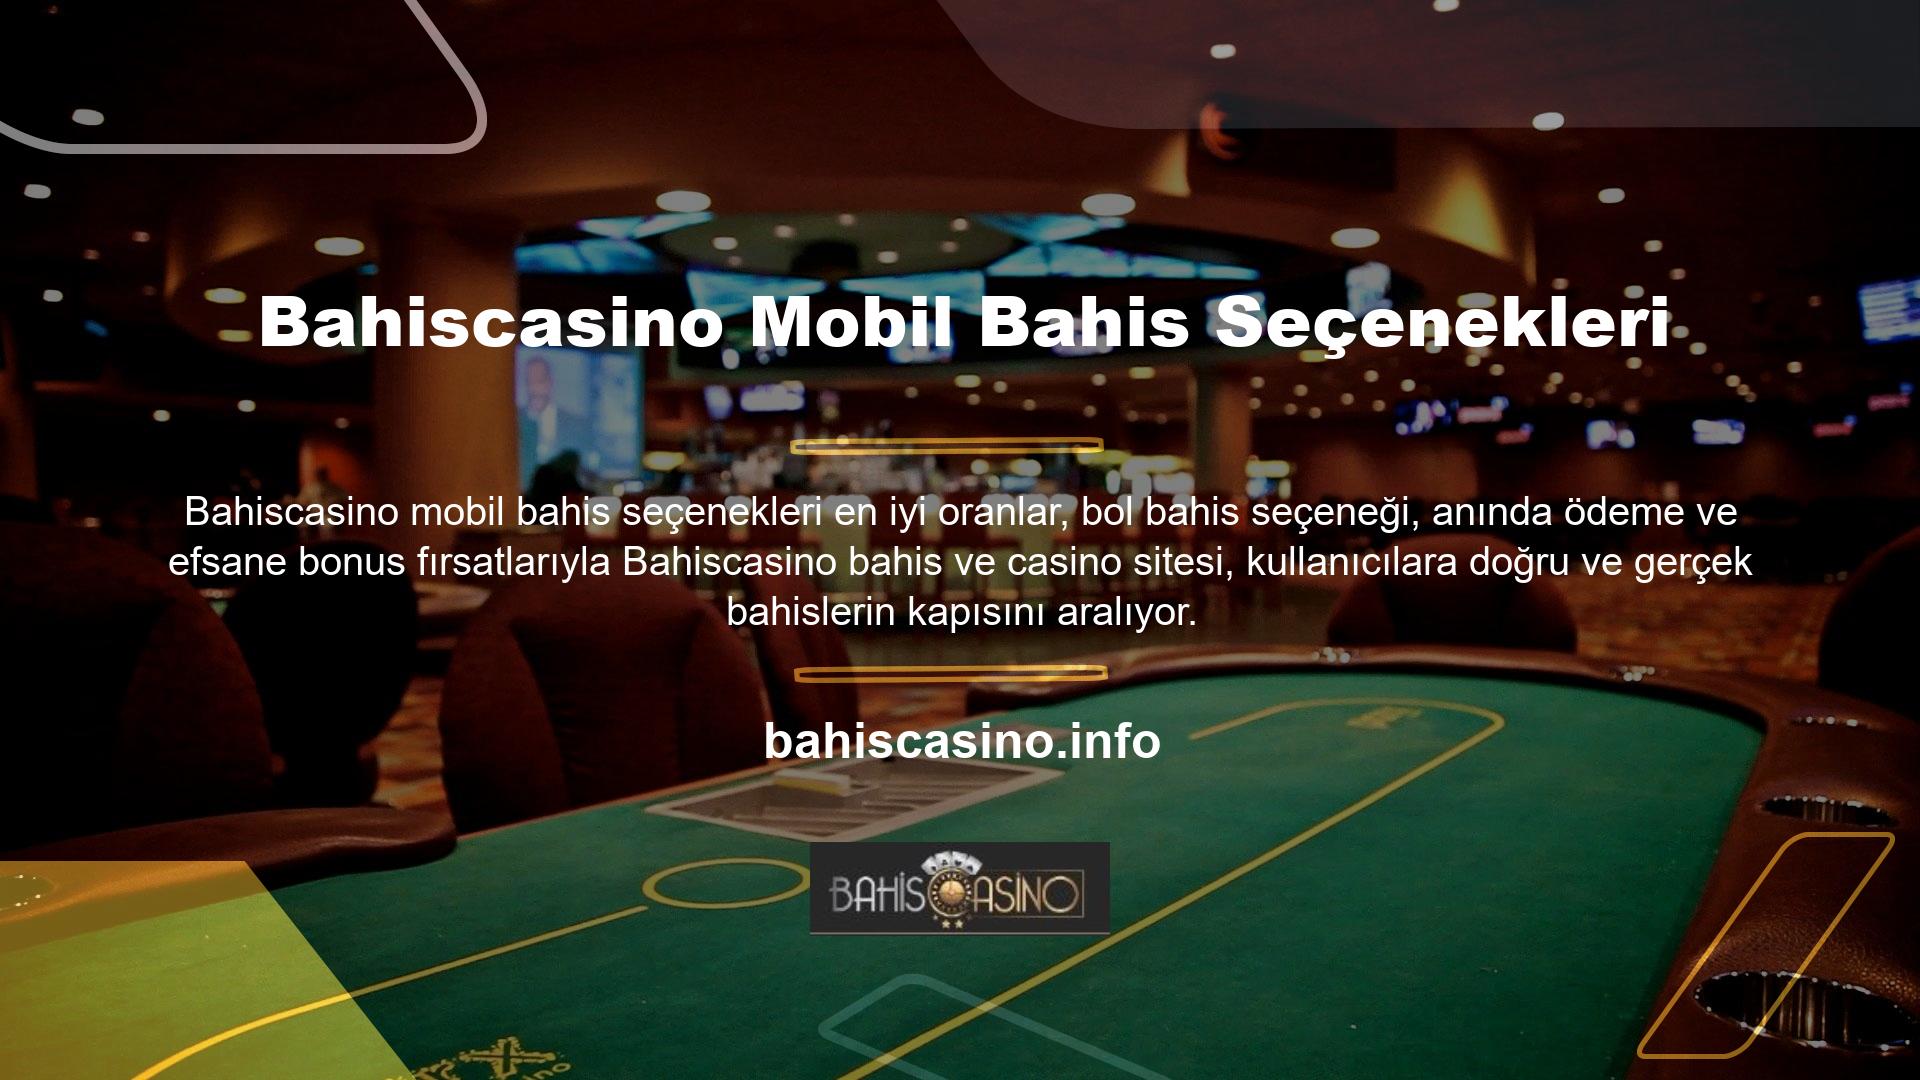 Diğer birçok bahis sitesinden farklı olarak Bahiscasino Bahis ve Casino sitesi sizlere daha yüksek oranlarla oyun oynama fırsatı sunarken aynı zamanda çok sayıda bonus ve promosyon da sunmaktadır